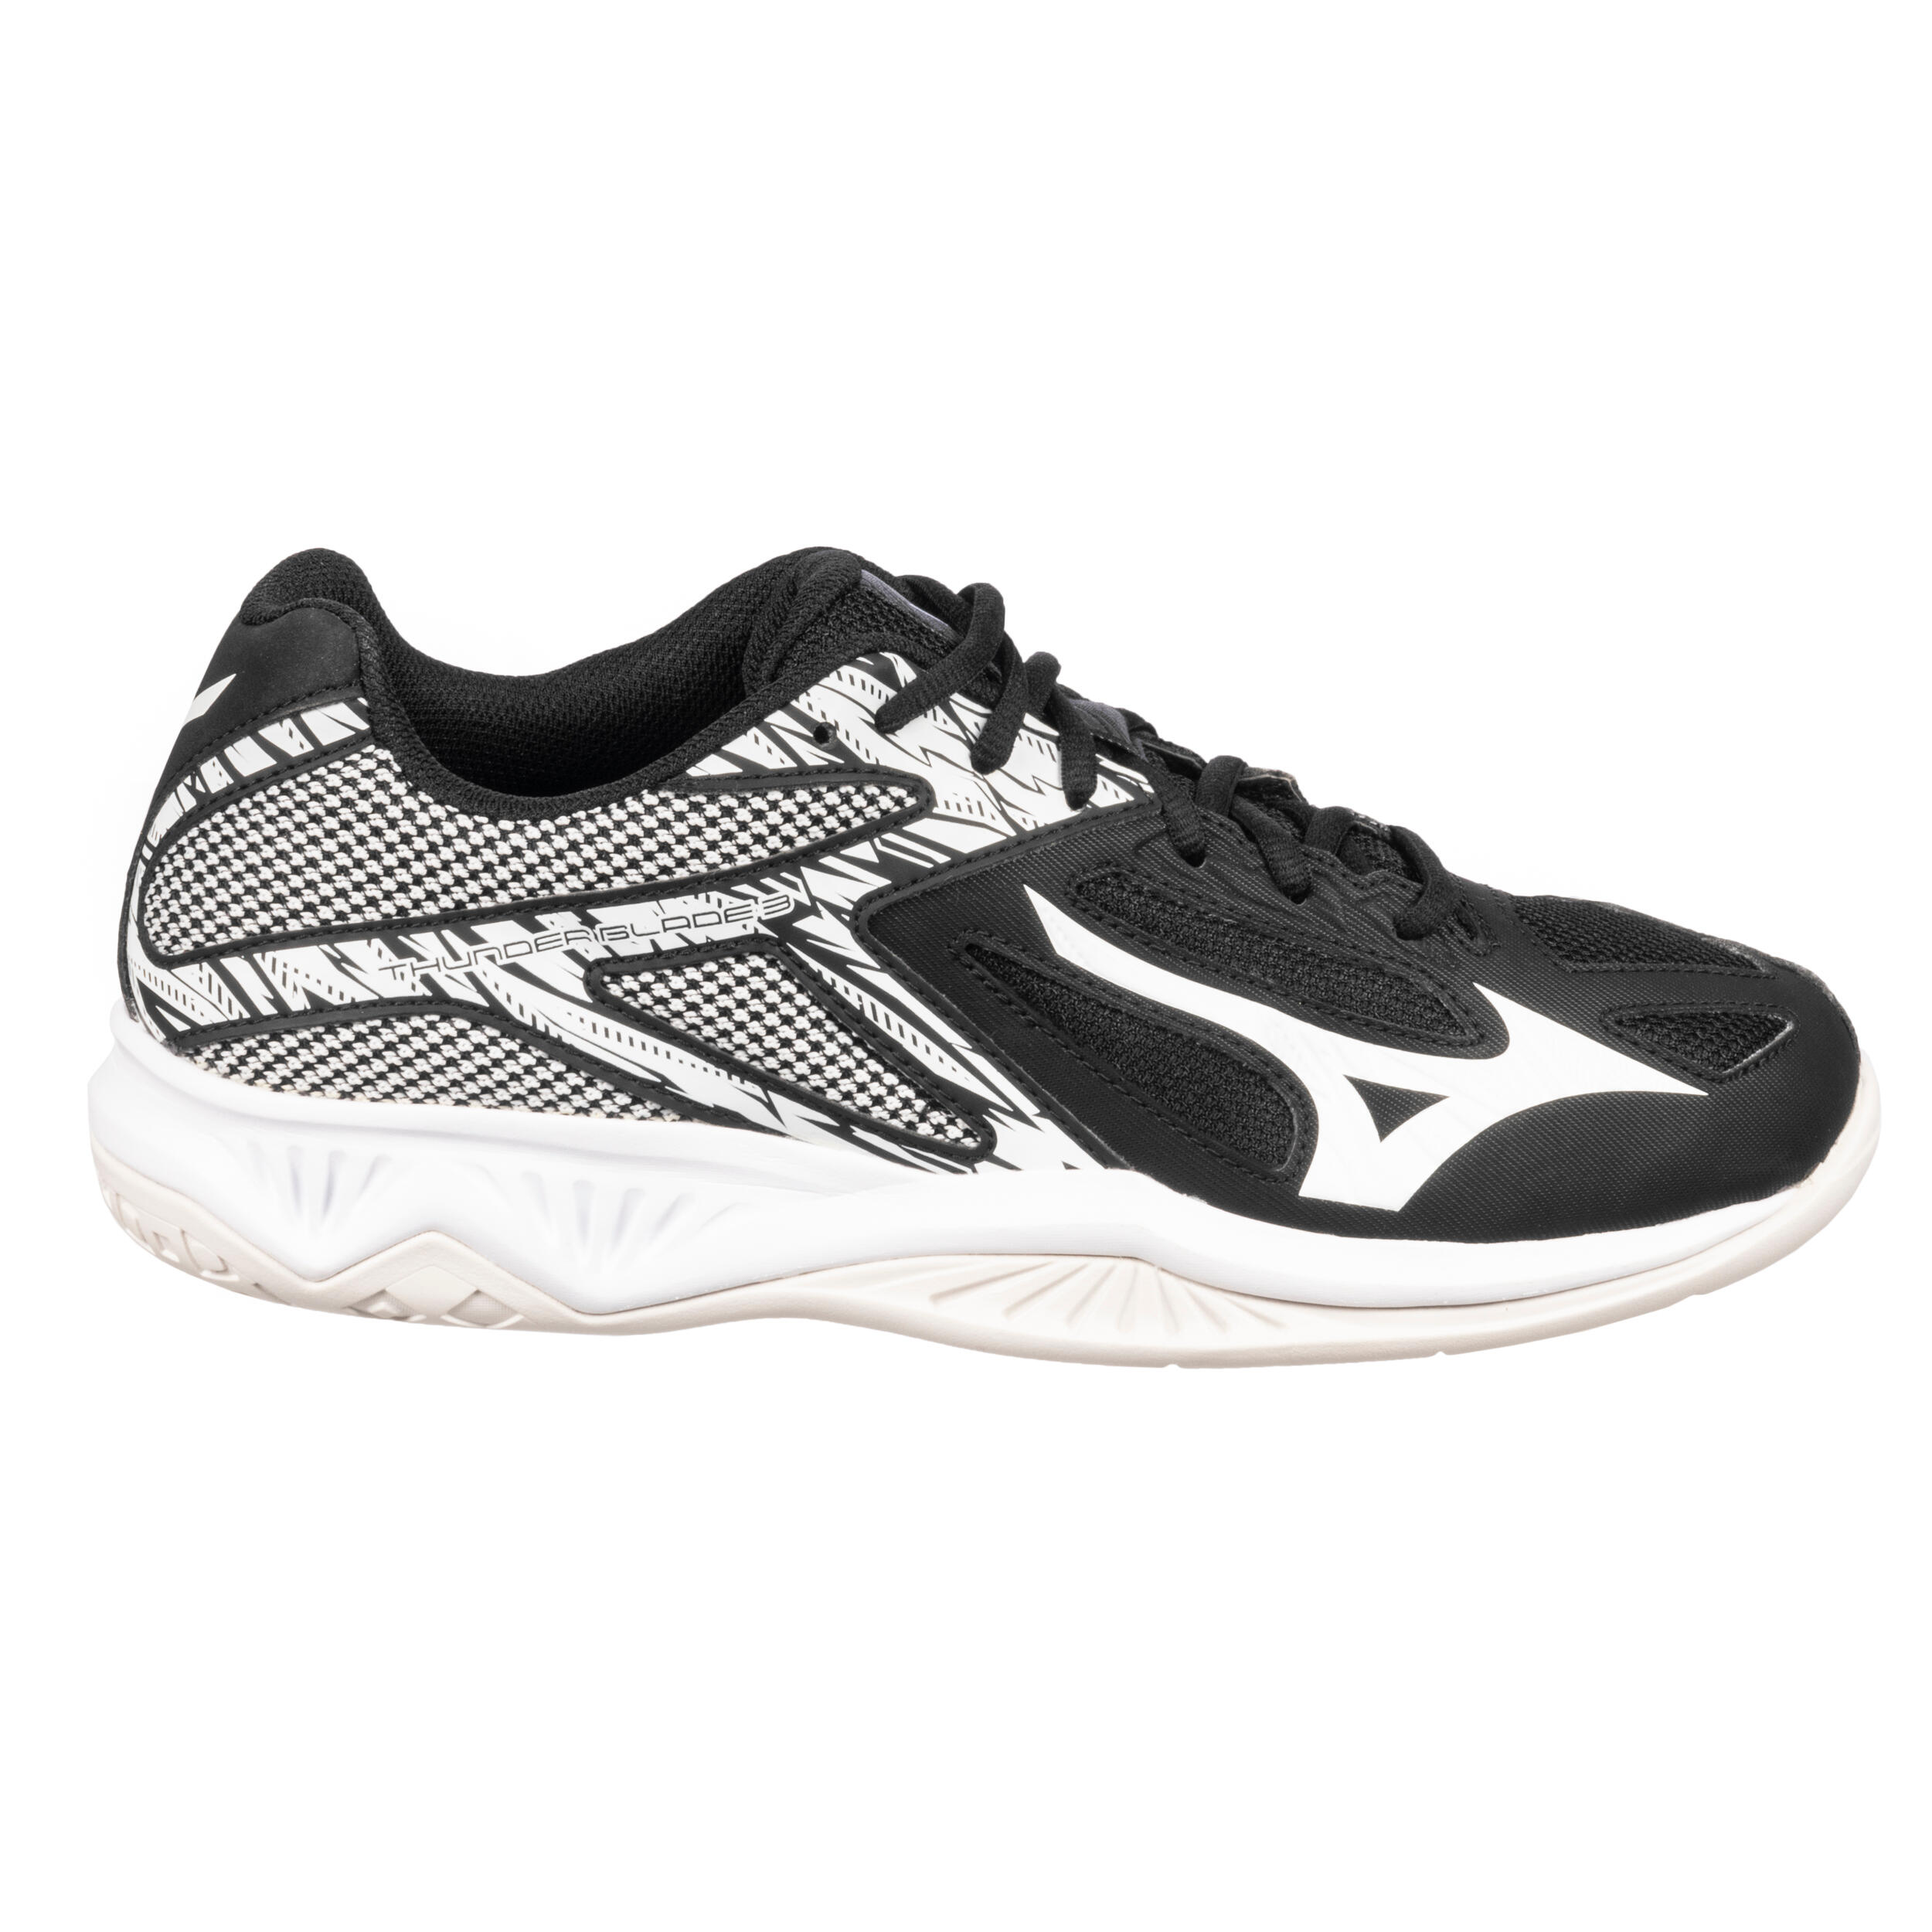 Squash Shoes Thunderball - Black 2/12